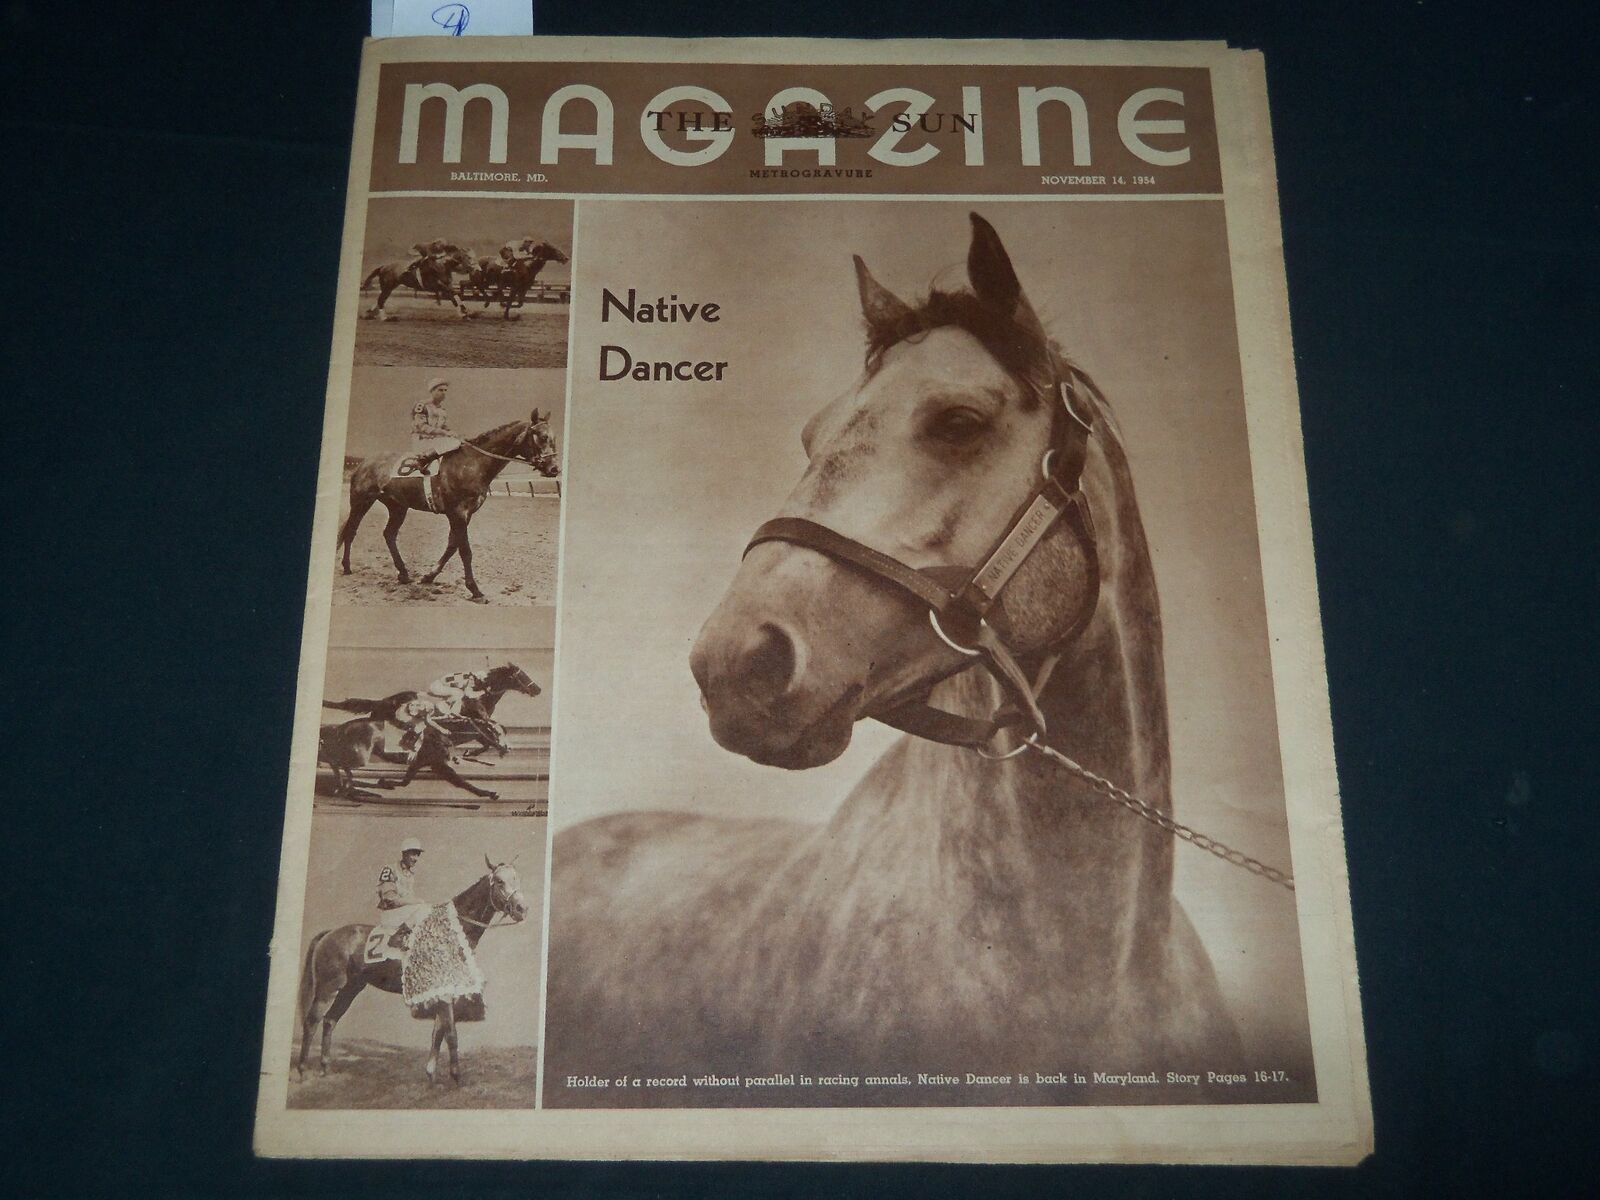 1954 NOVEMBER 14 BALTIMORE SUN MAGAZINE SECTION - NATIVE DANCER COVER - NP 3781